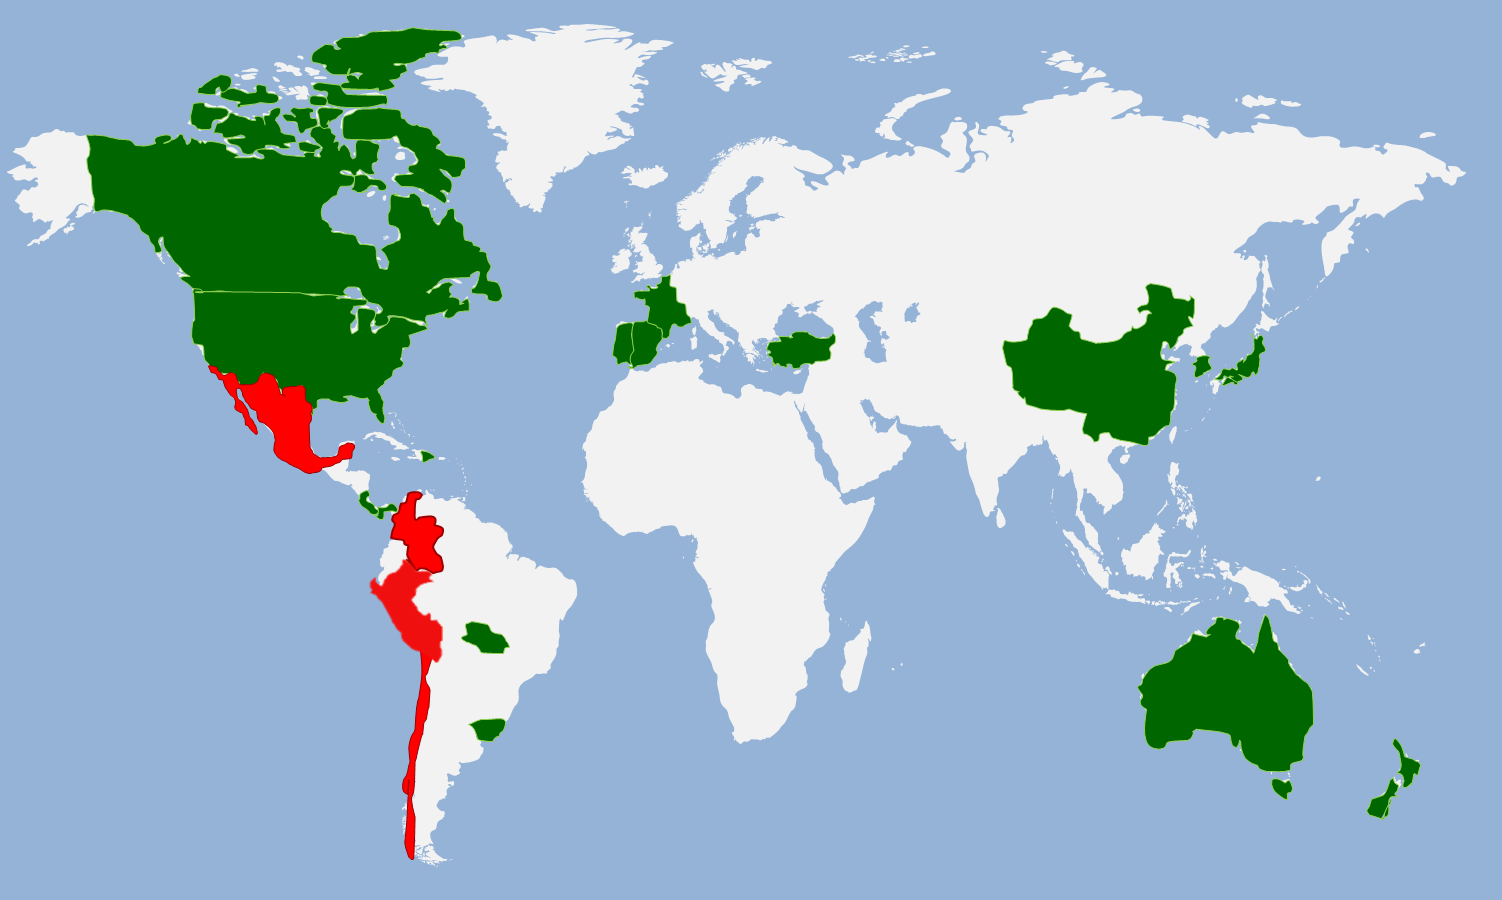 Alianza del Pacífico Integración Profunda México México Colombia Colombia Perú Perú Países Miembro: - Chile - Colombia - México - Perú Chile Chile Países Observadores: 1. Panamá 2. Costa Rica 3.